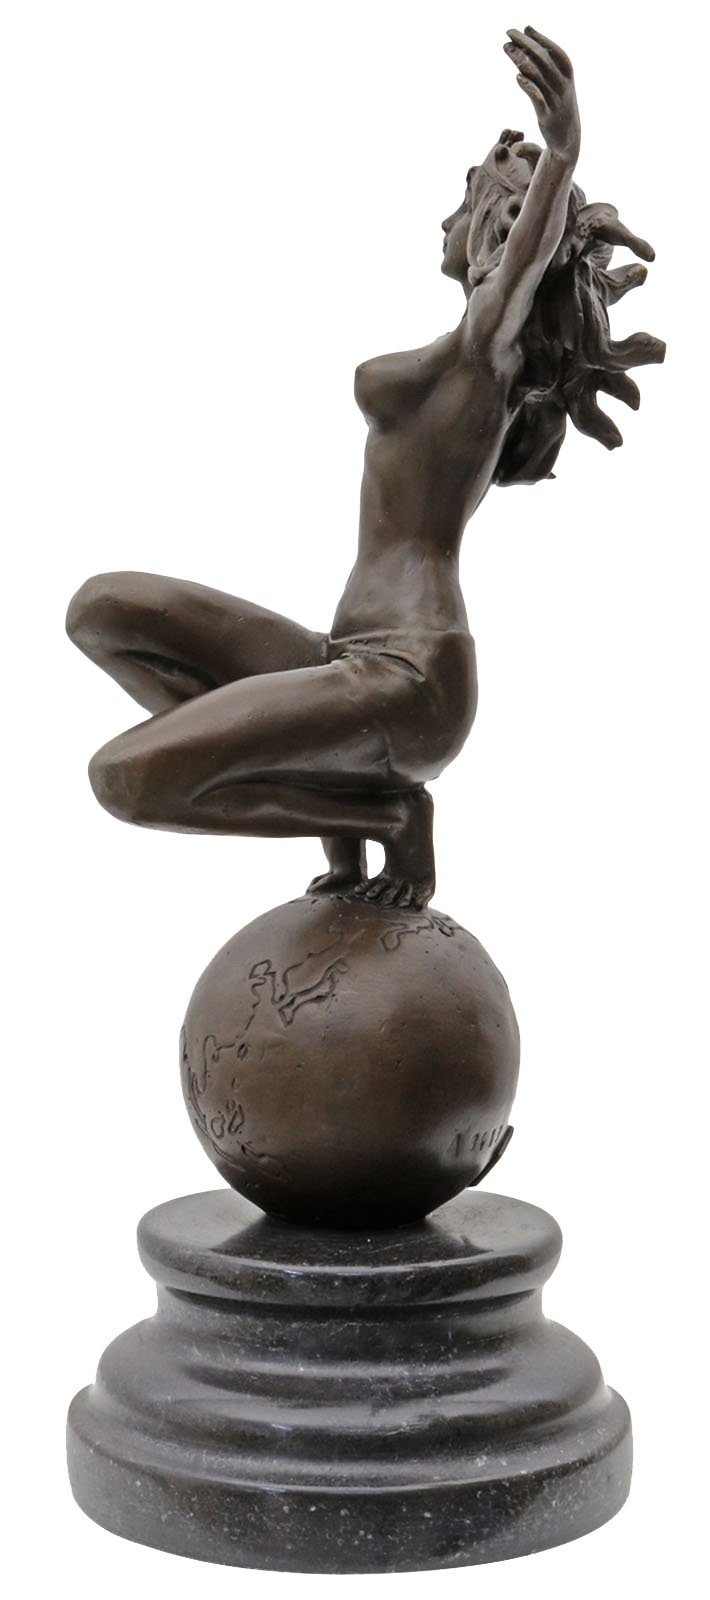 Aubaho Skulptur Bronzeskulptur Frau Weltkugel im Antik-Stil Figur Bronze Erotik Statue